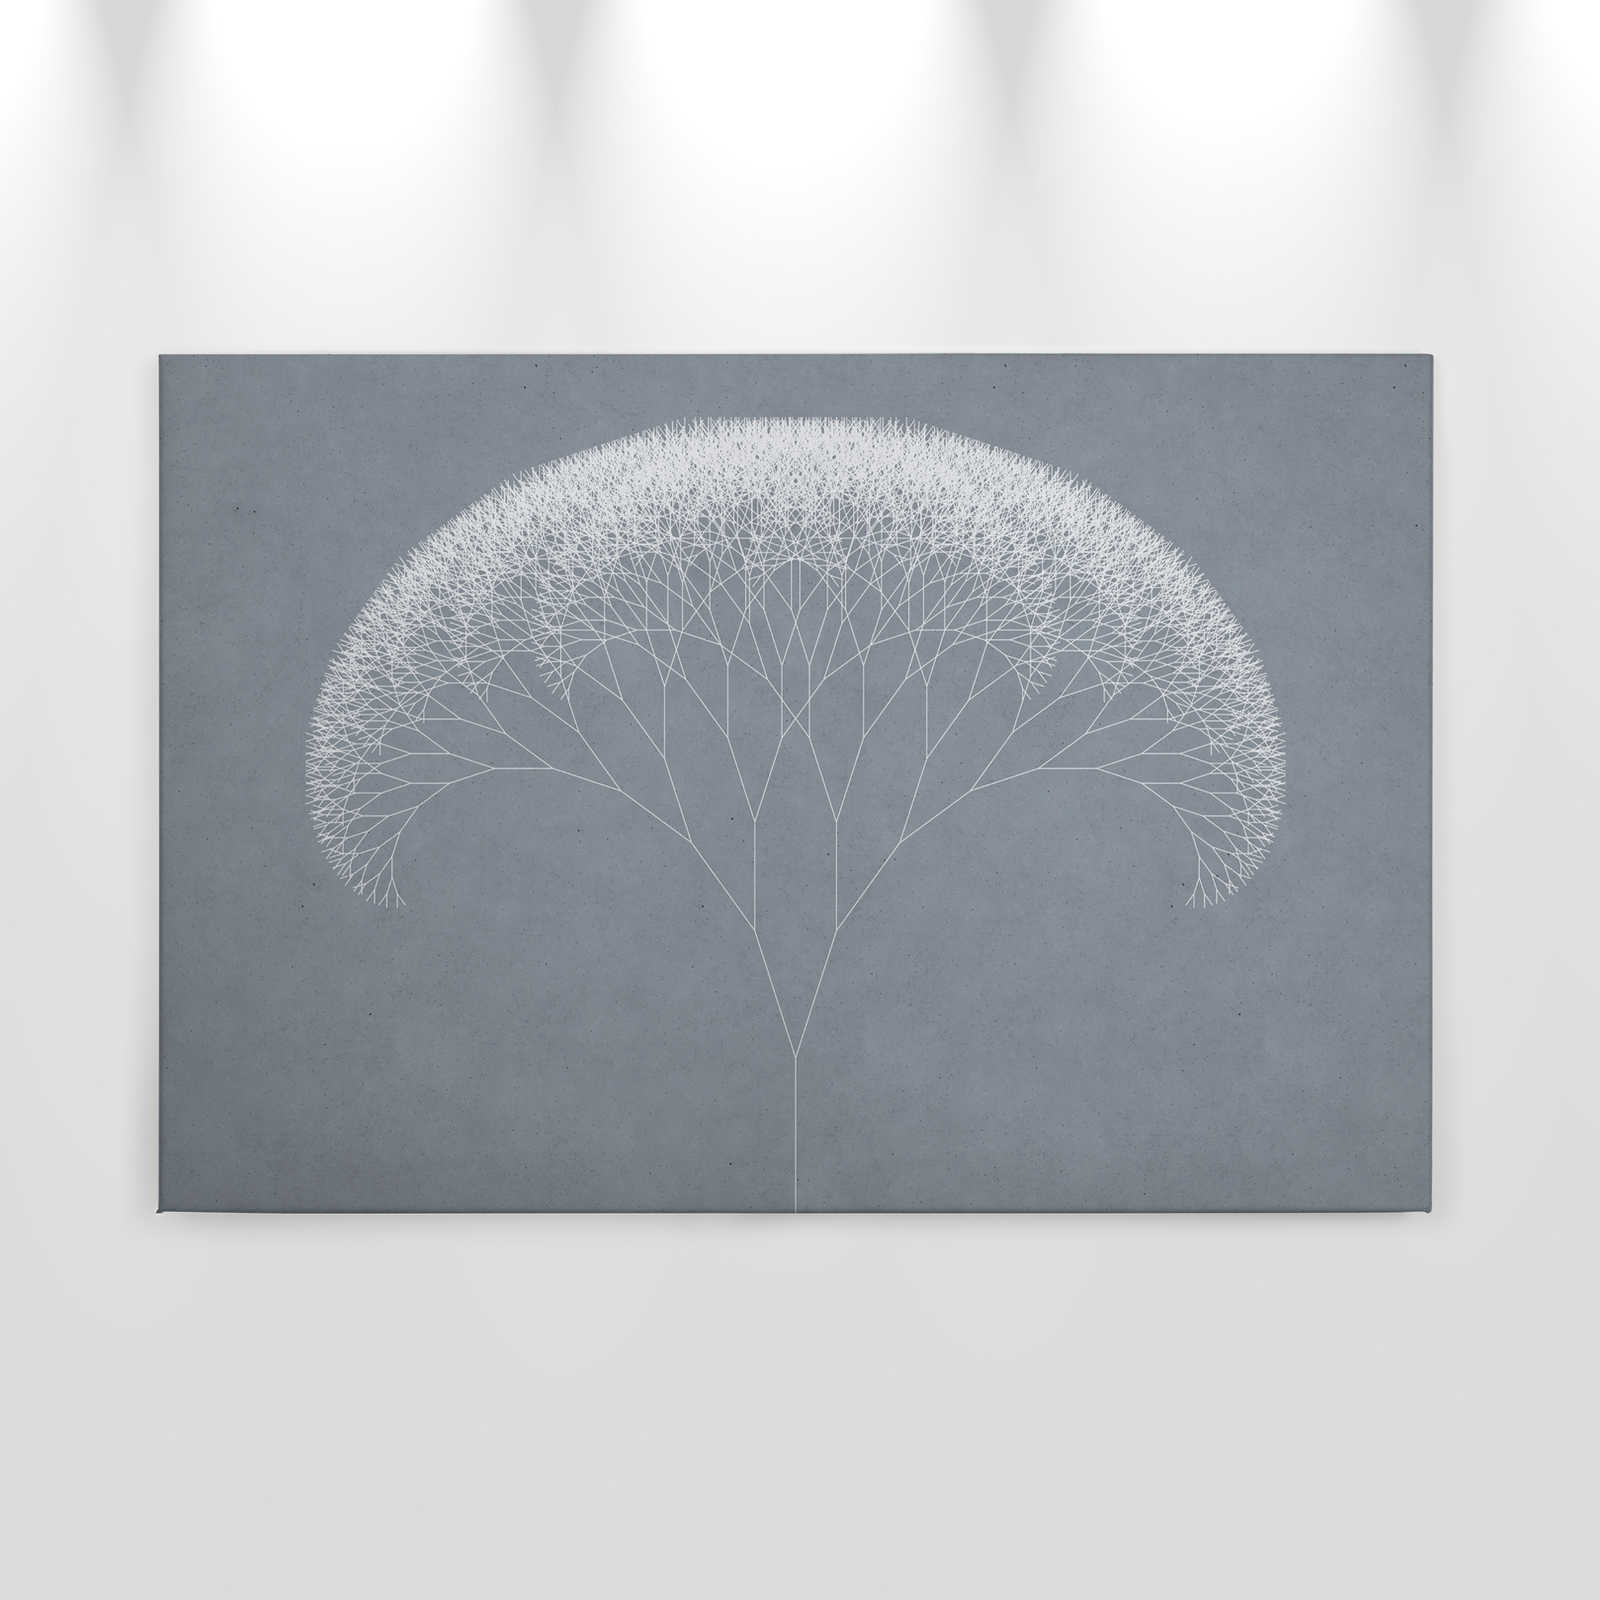             Quadro su tela Dandelions Tree | blu, bianco - 0,90 m x 0,60 m
        